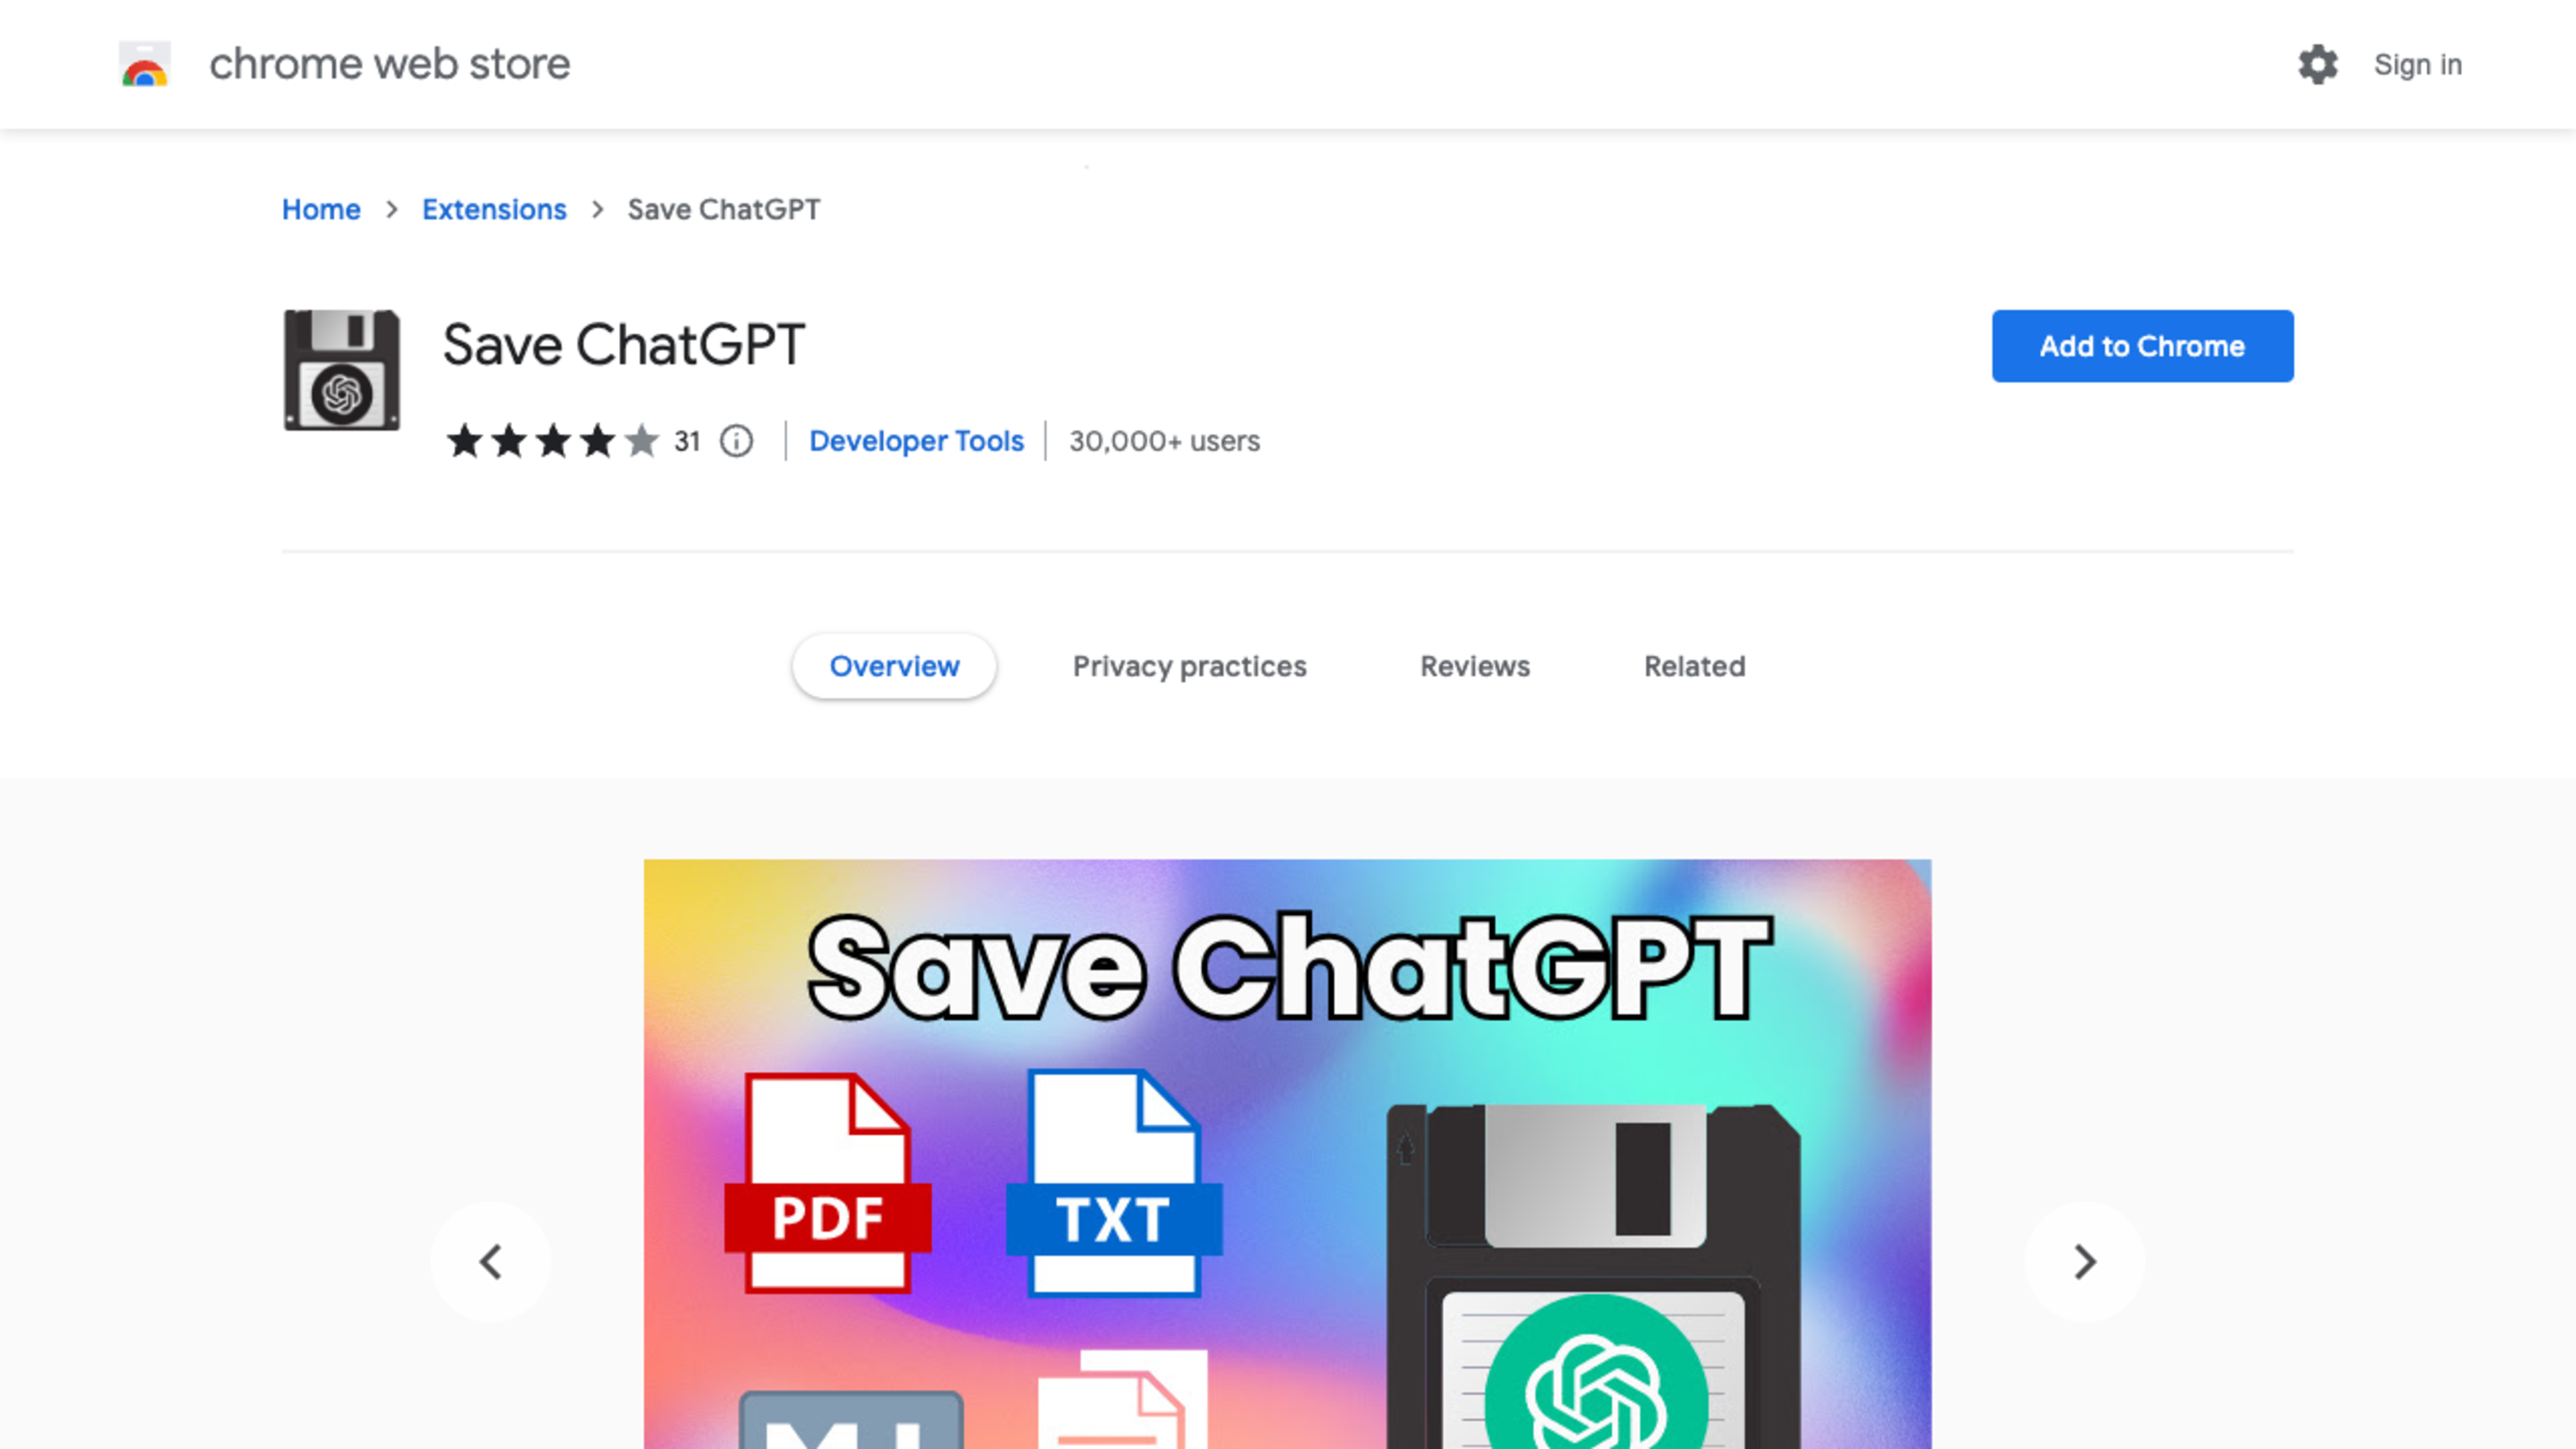 Save ChatGPT